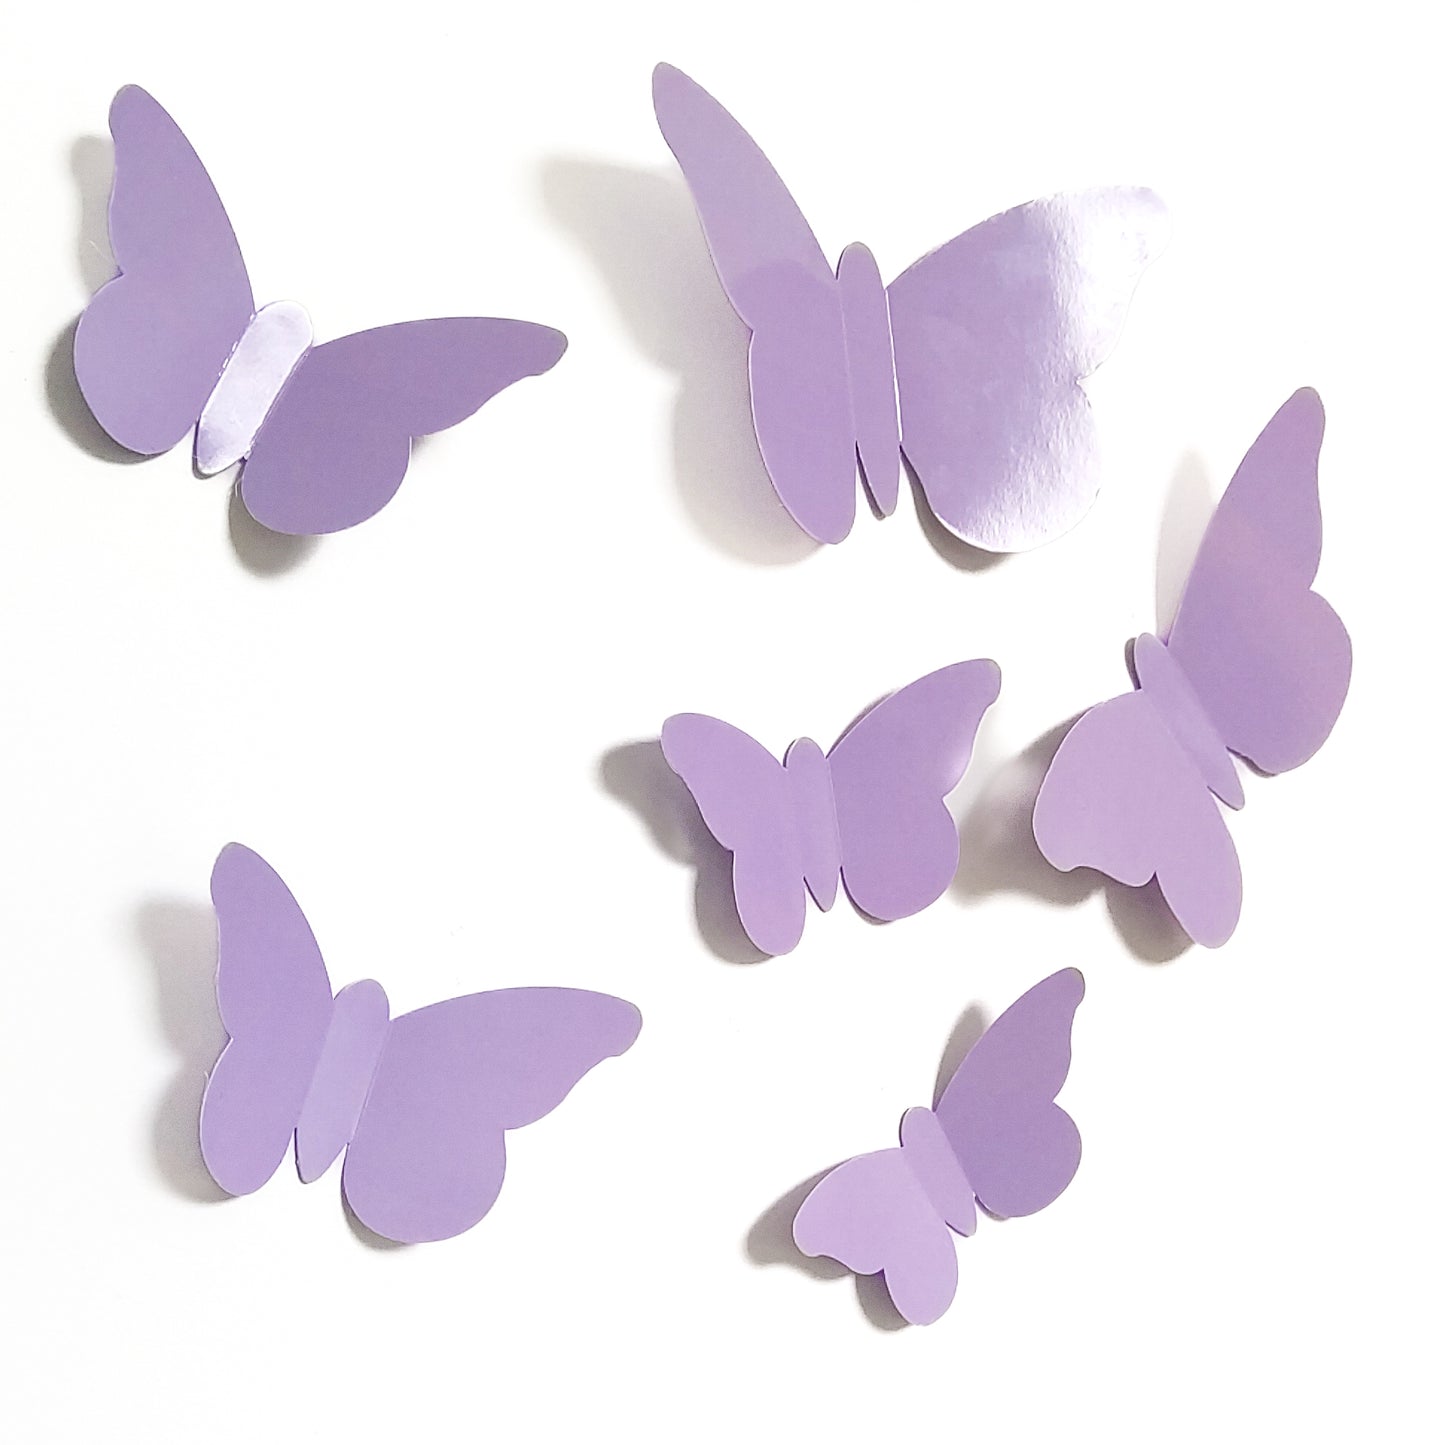 Stickers papillons en relief 3D, couleurs mauve, violet pastel, bleu layette